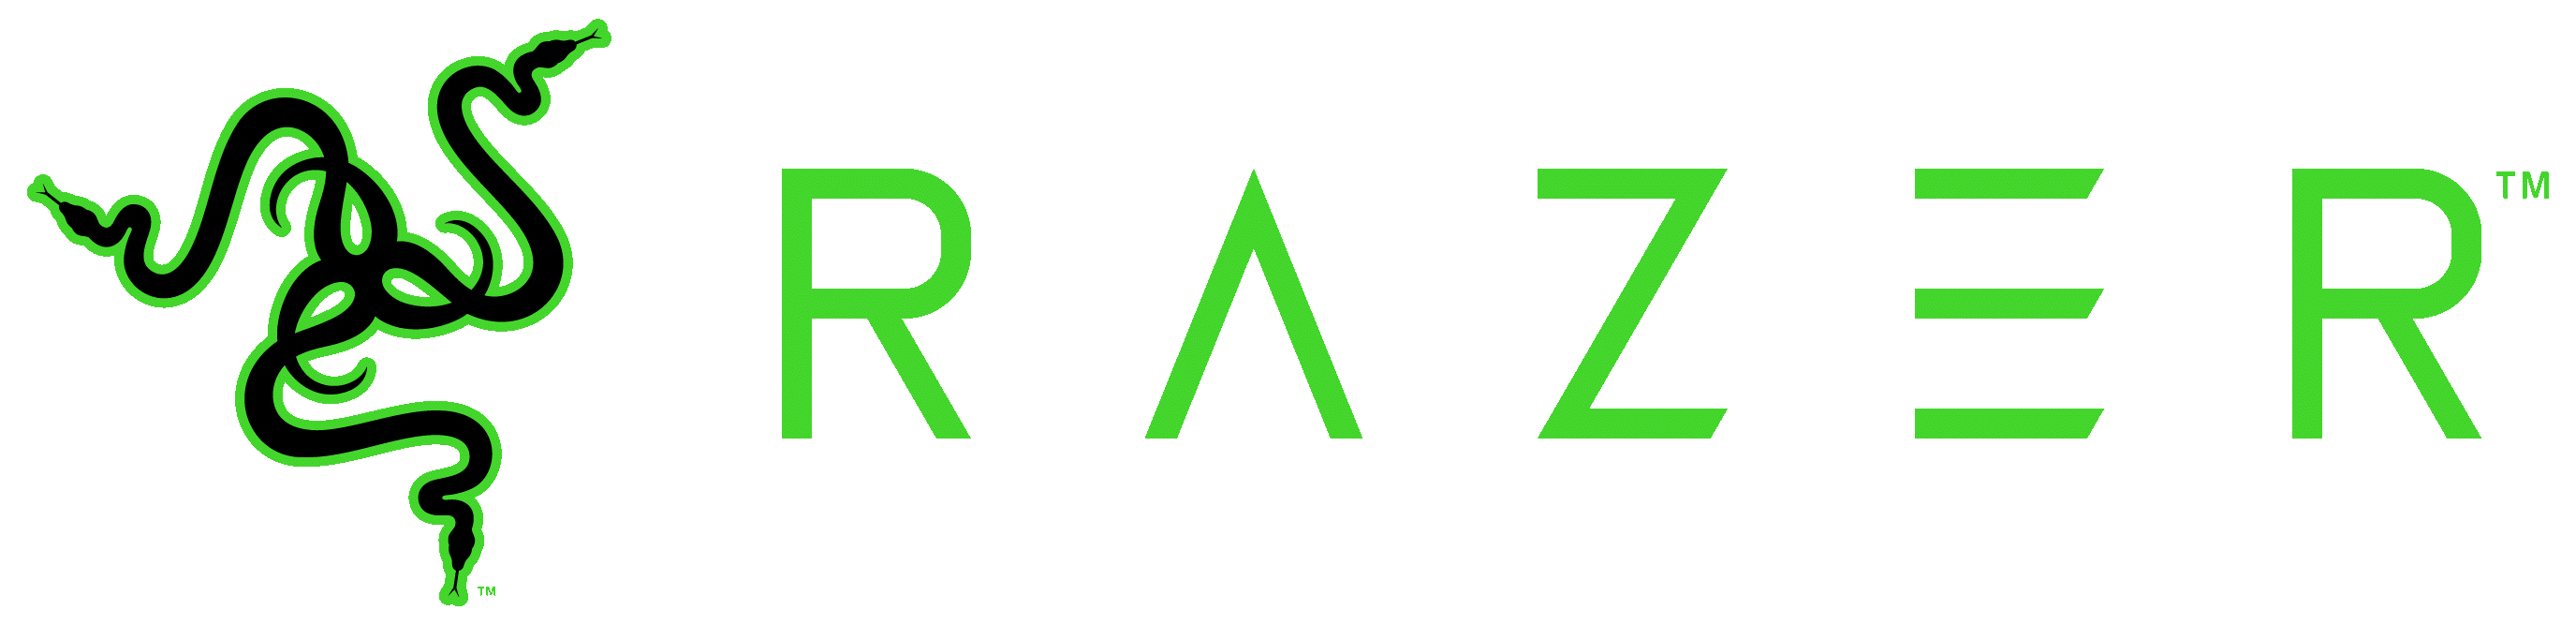 Het logo van Razer.